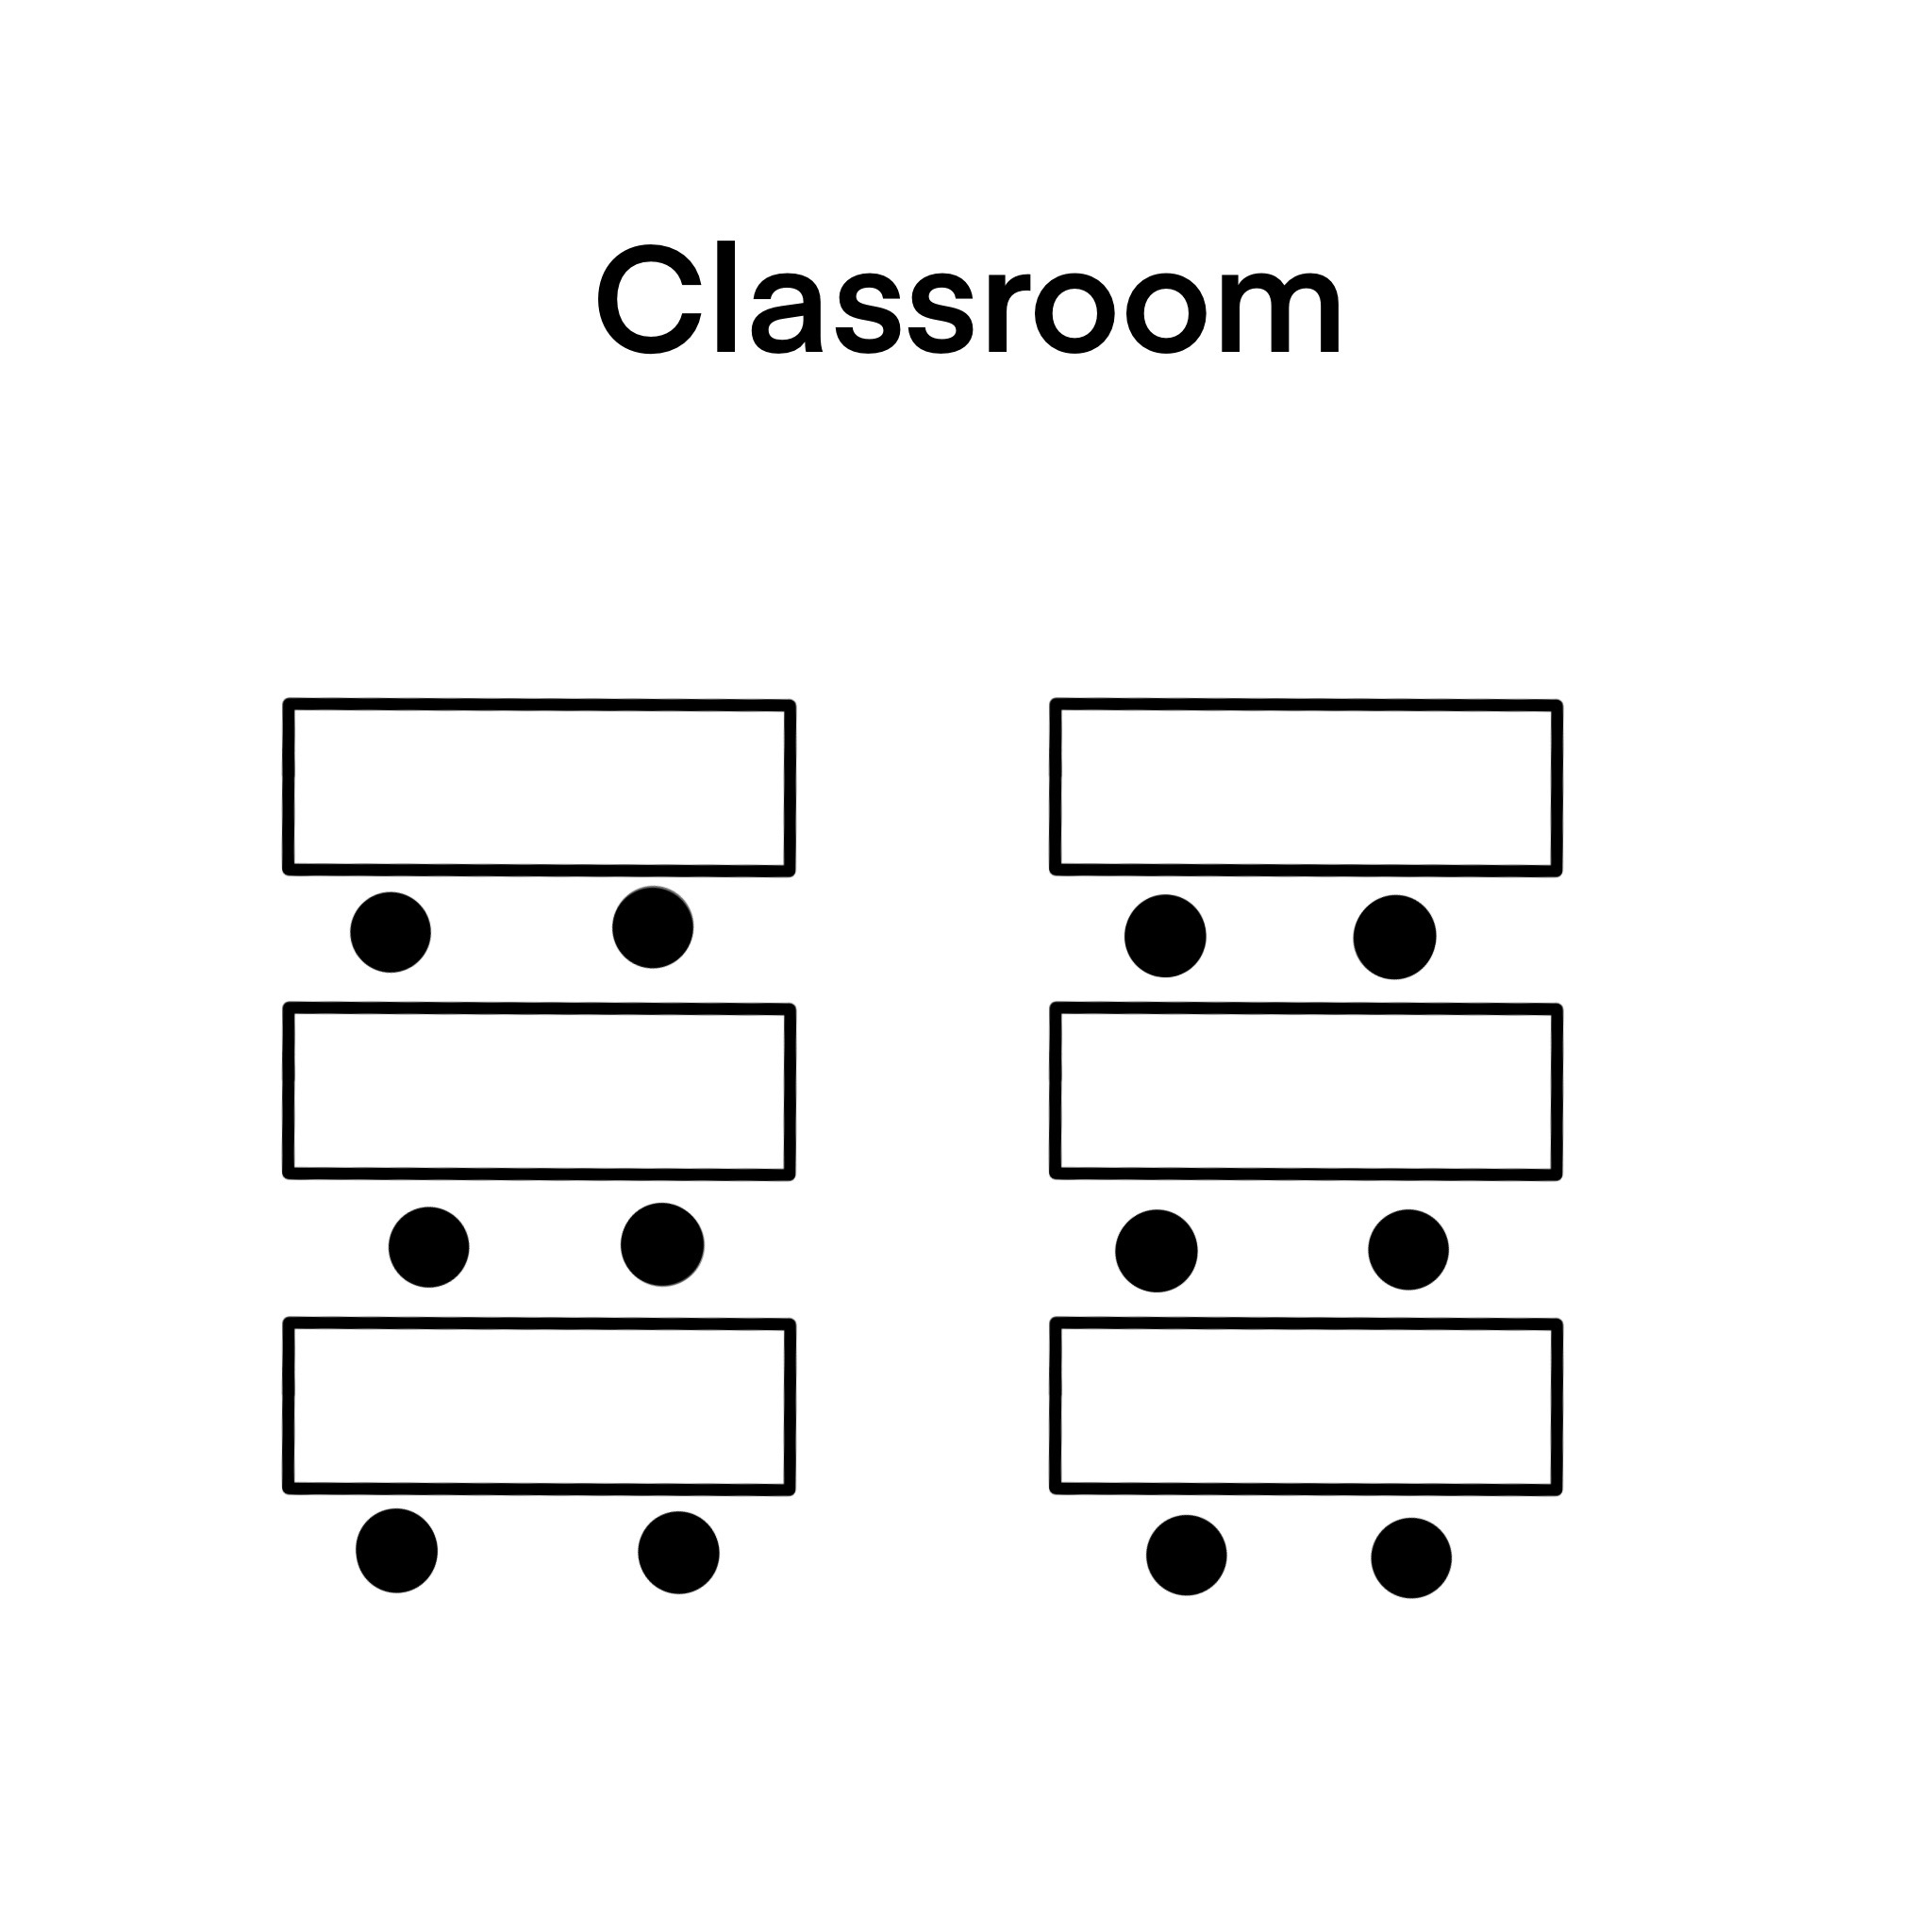 Classroom diagram